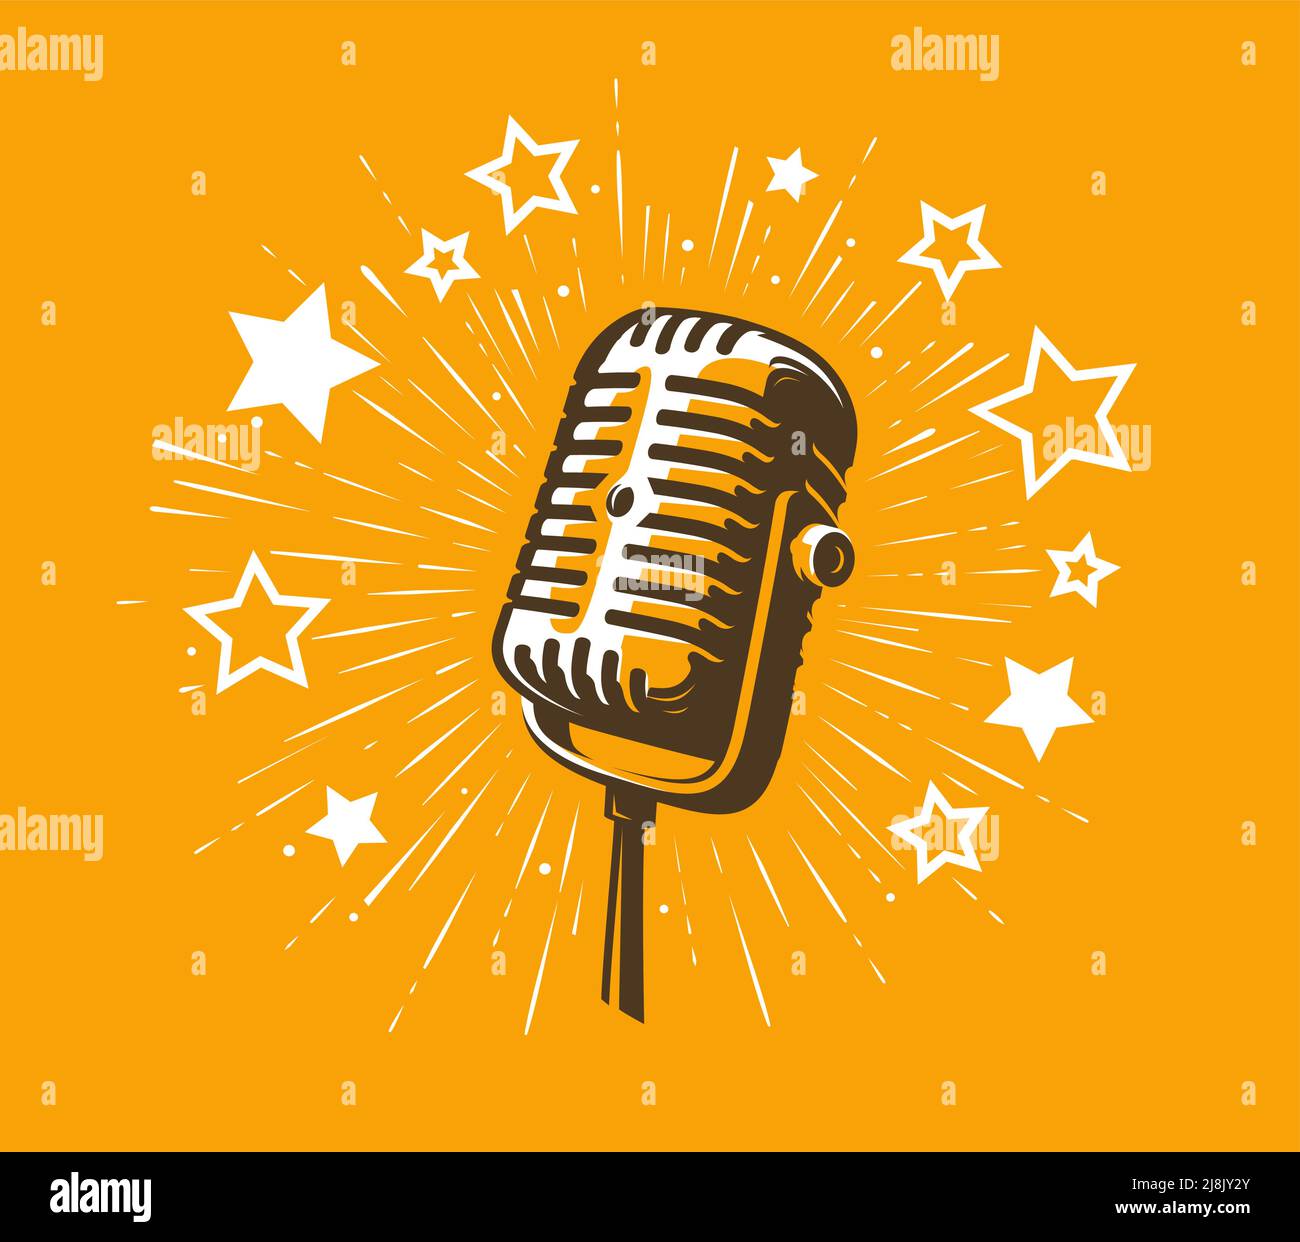 Simbolo della festa del karaoke. Immagine vettoriale del microfono retrò e dell'emblema delle stelle Illustrazione Vettoriale